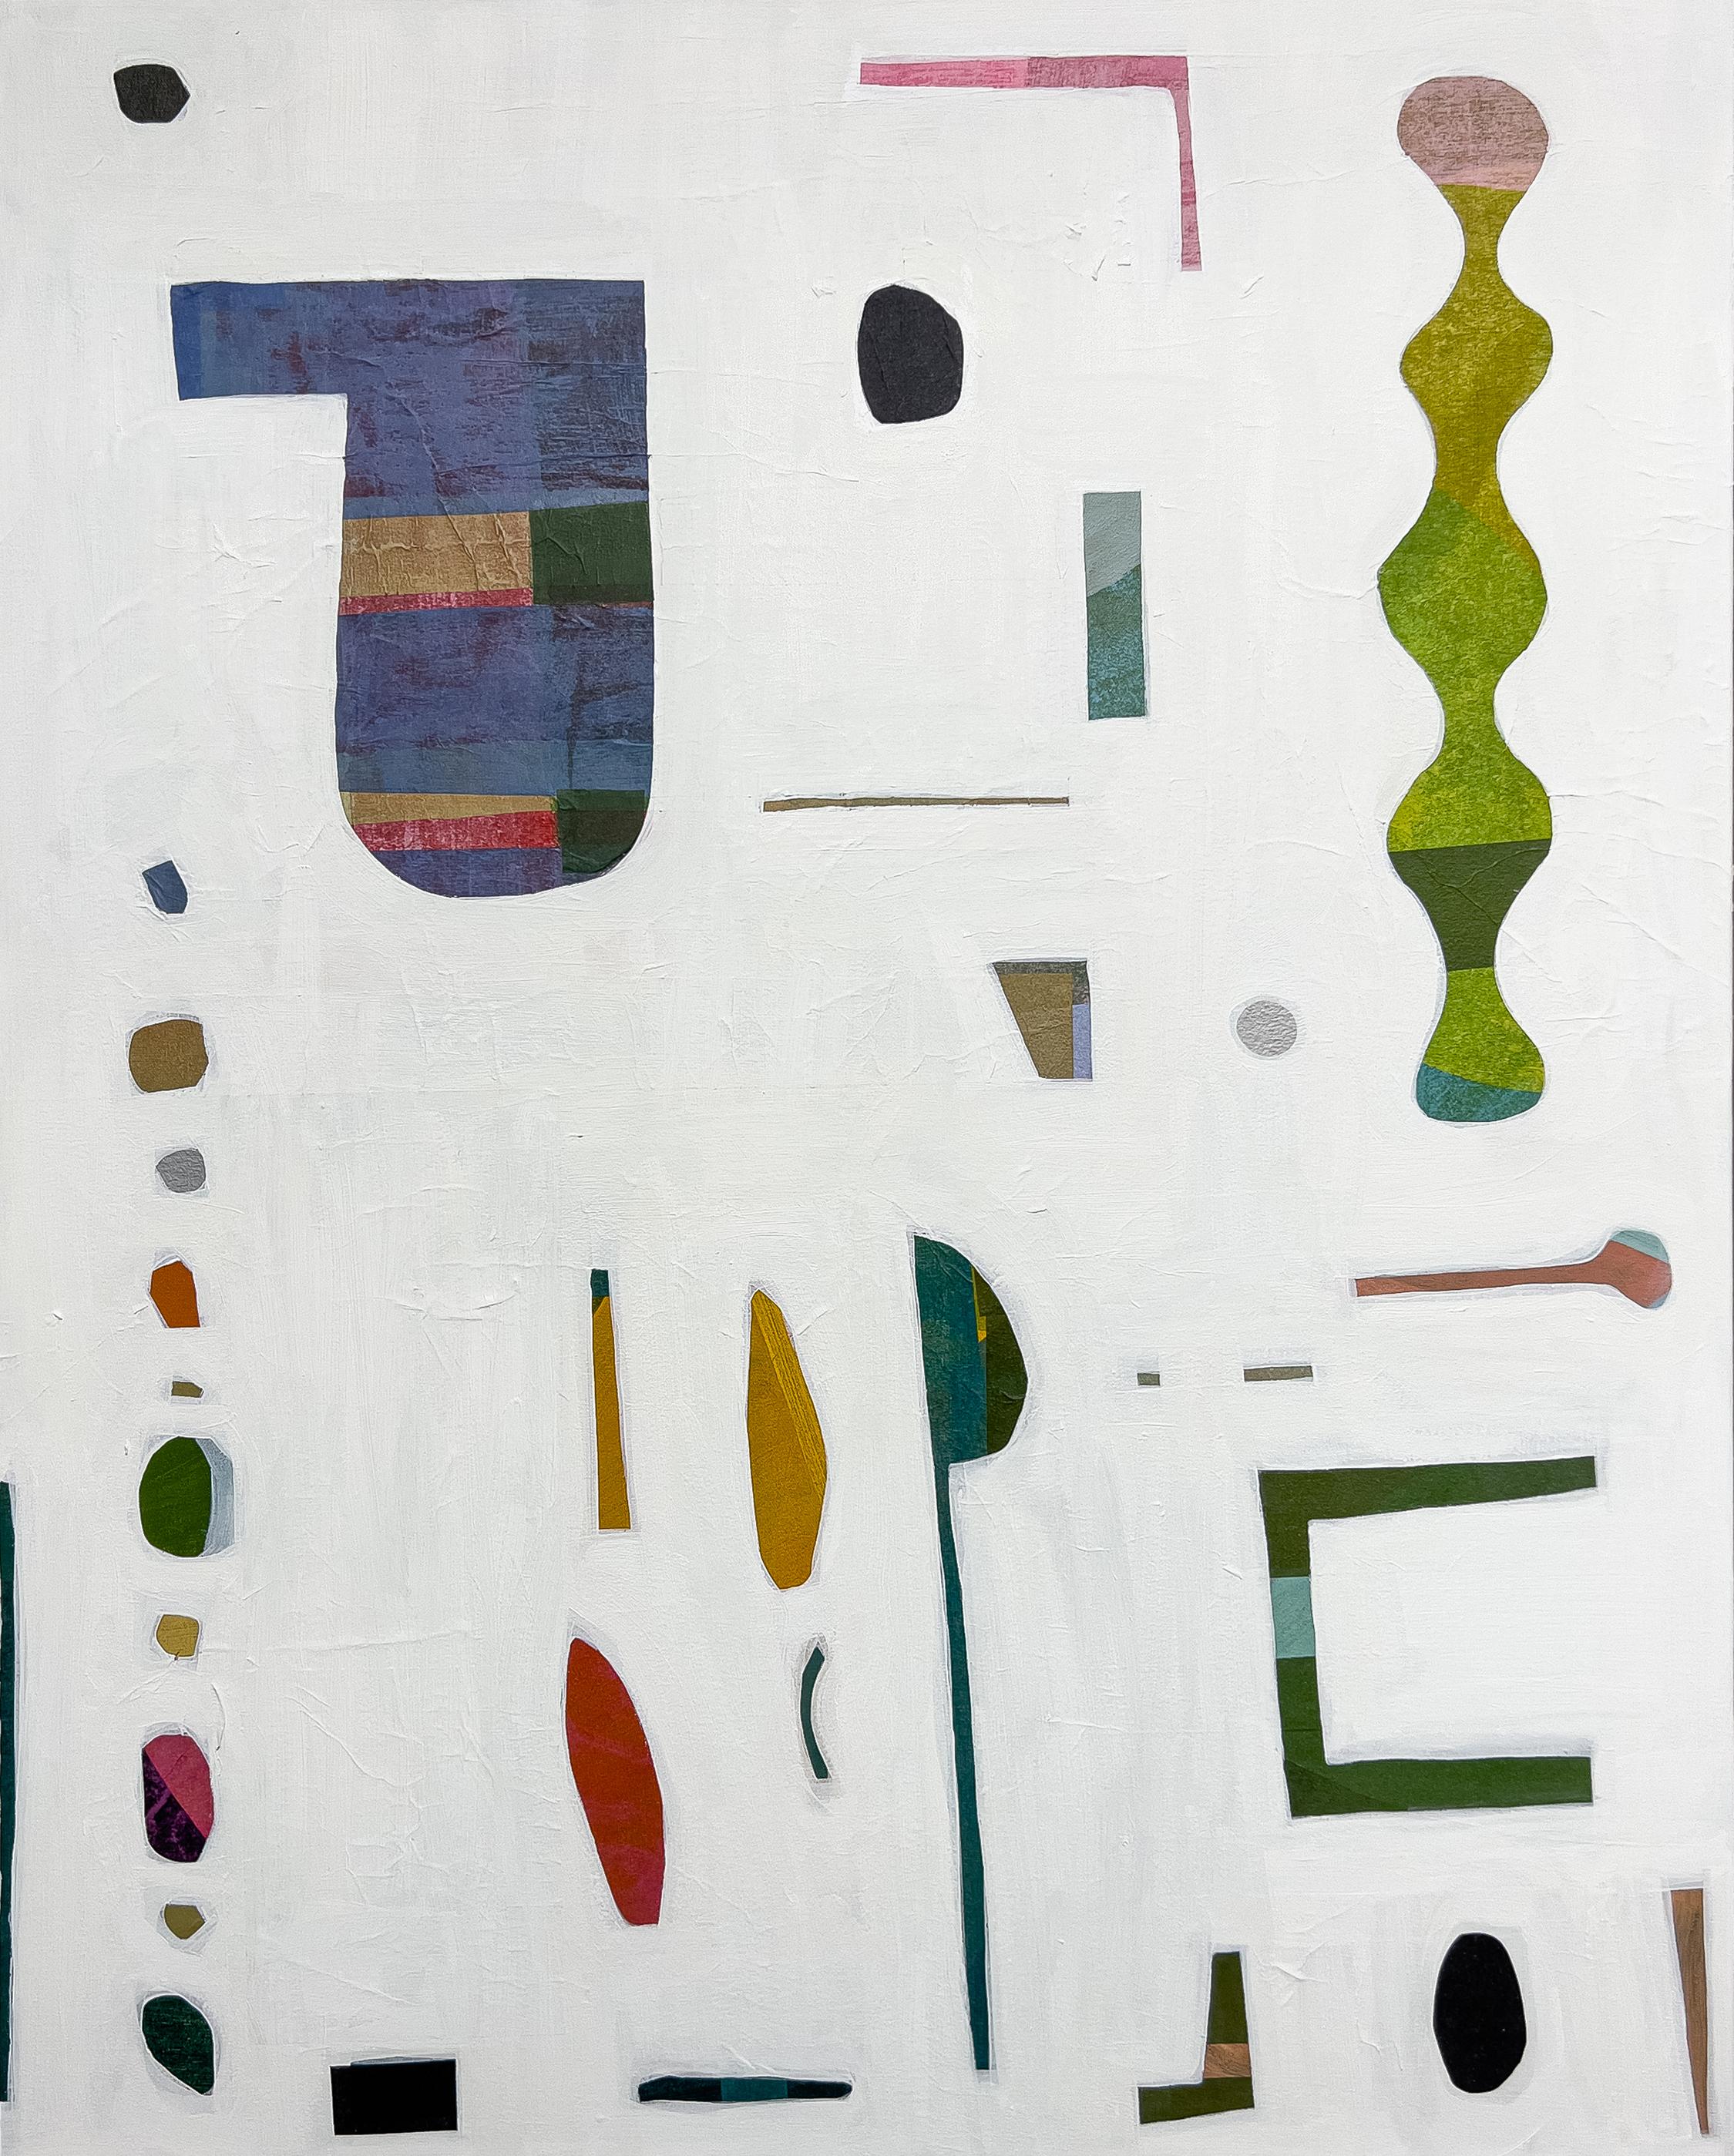 Abstract Painting Rebekah Andrade - Carte de l'esprit One, bleu violet, vert olive, ocre rose et formes géométriques sur blanc